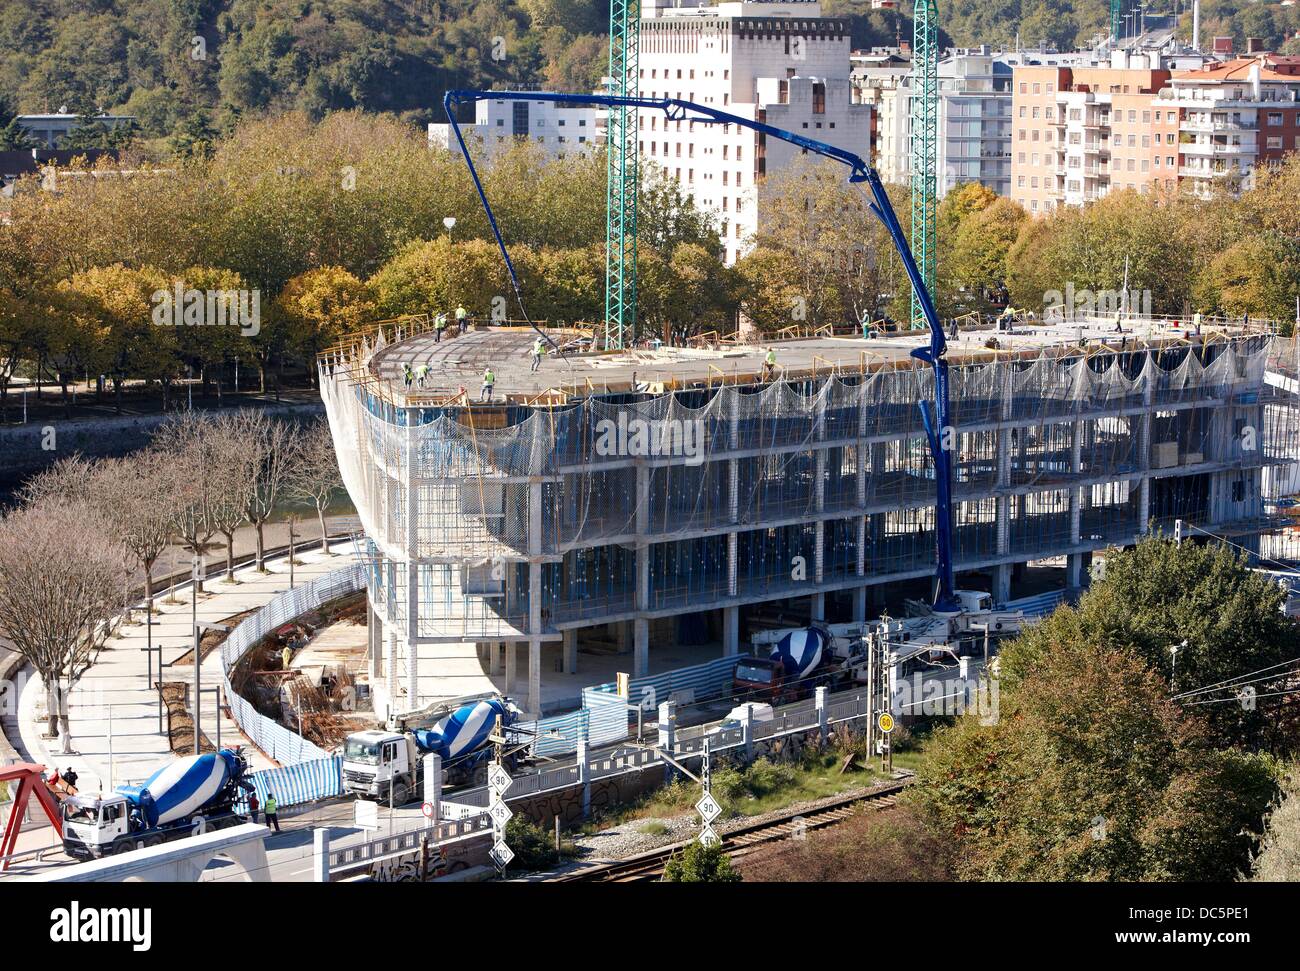 Building under construction, San Sebastian, Guipuzcoa, Basque Country, Spain Stock Photo